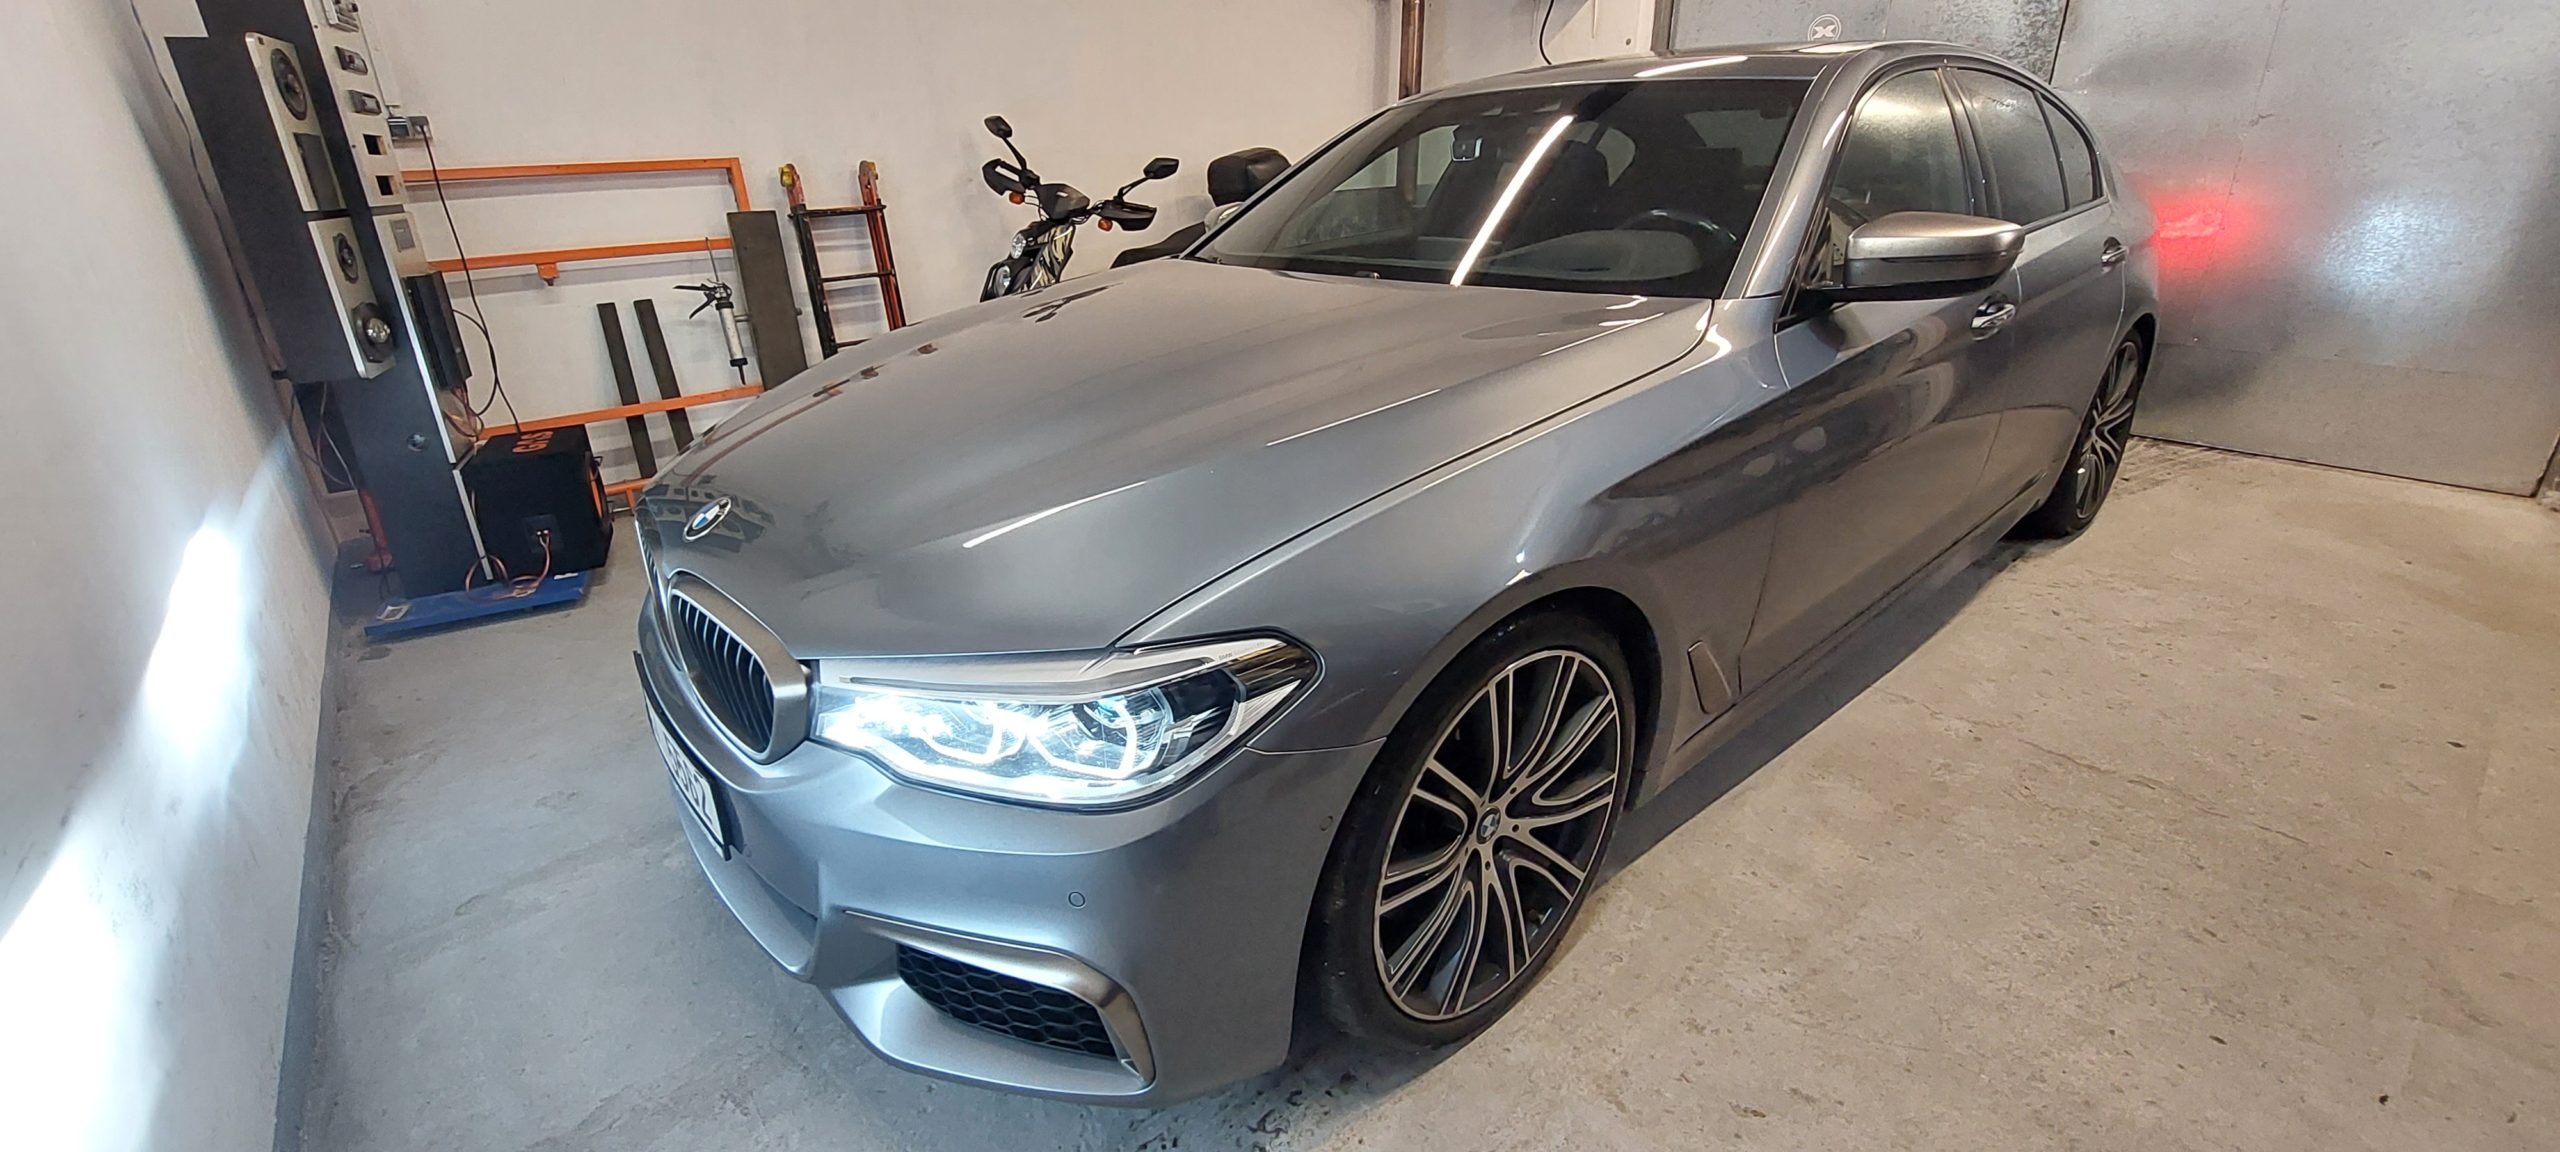 Právě si prohlížíte BMW G30 – luxusní ozvučení